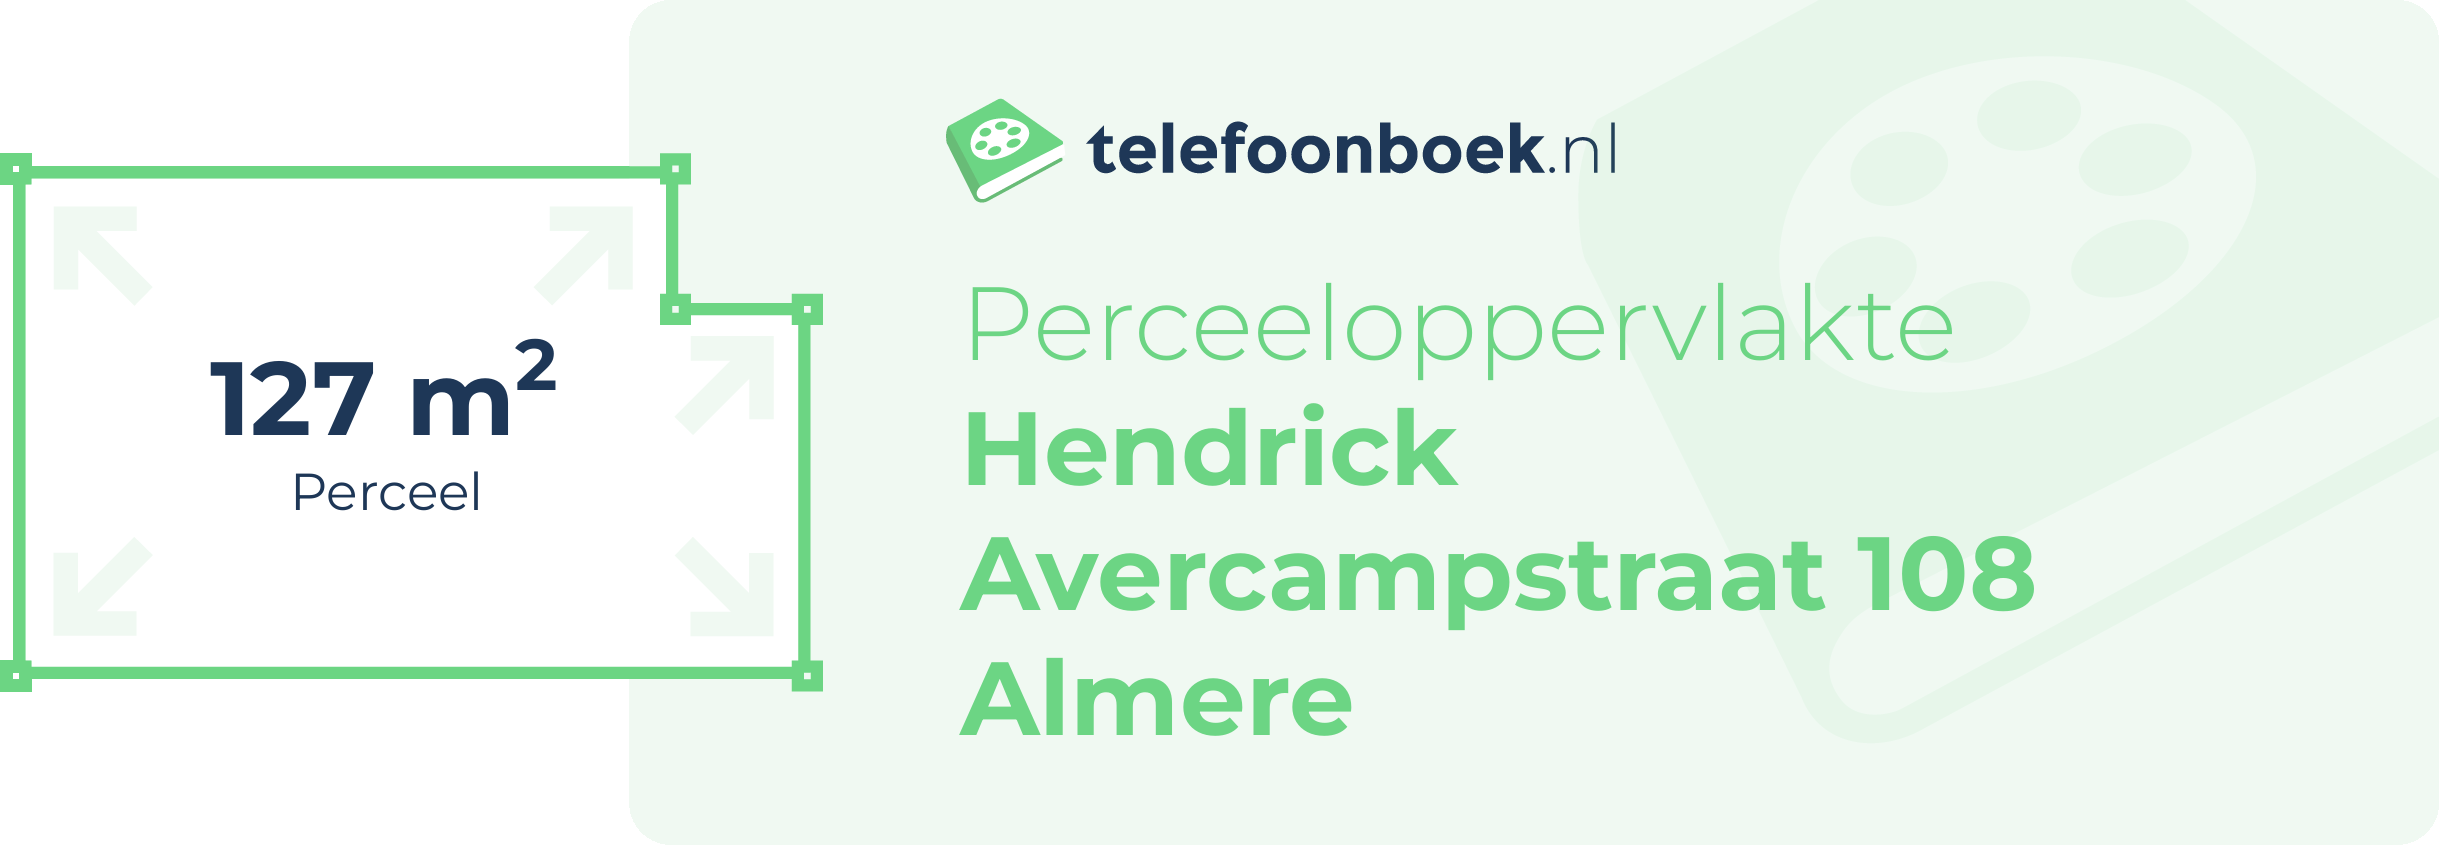 Perceeloppervlakte Hendrick Avercampstraat 108 Almere